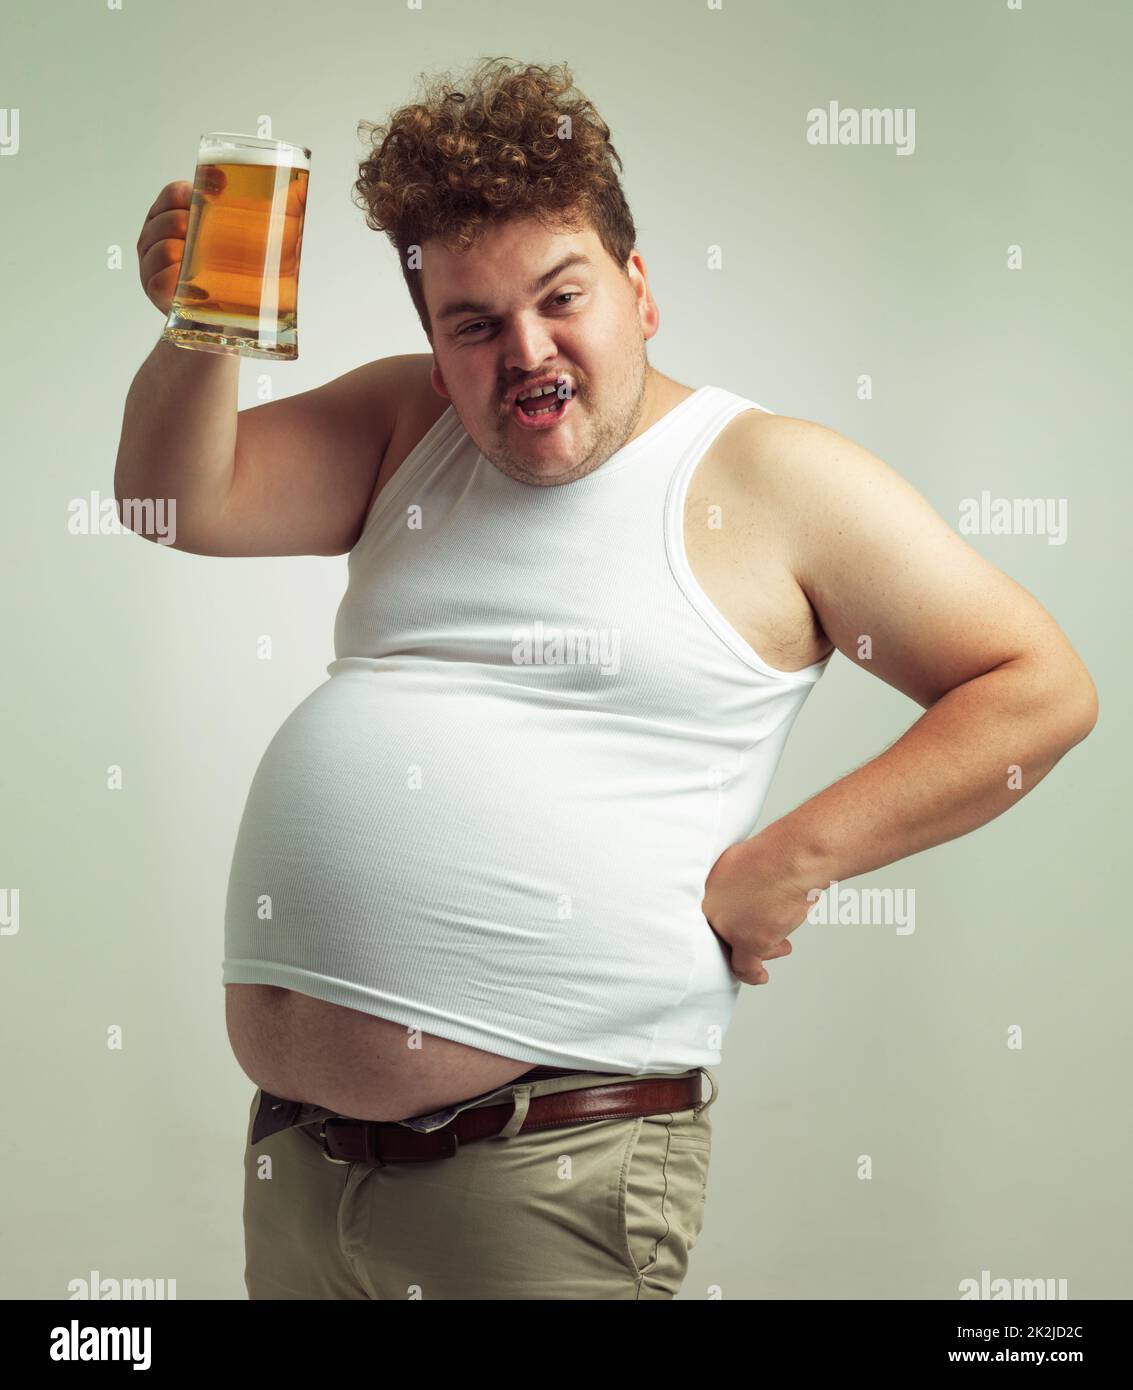 Prost. Aufnahme eines übergewichtigen Mannes, der sein Bier zum Anstoßen anhebt. Stockfoto